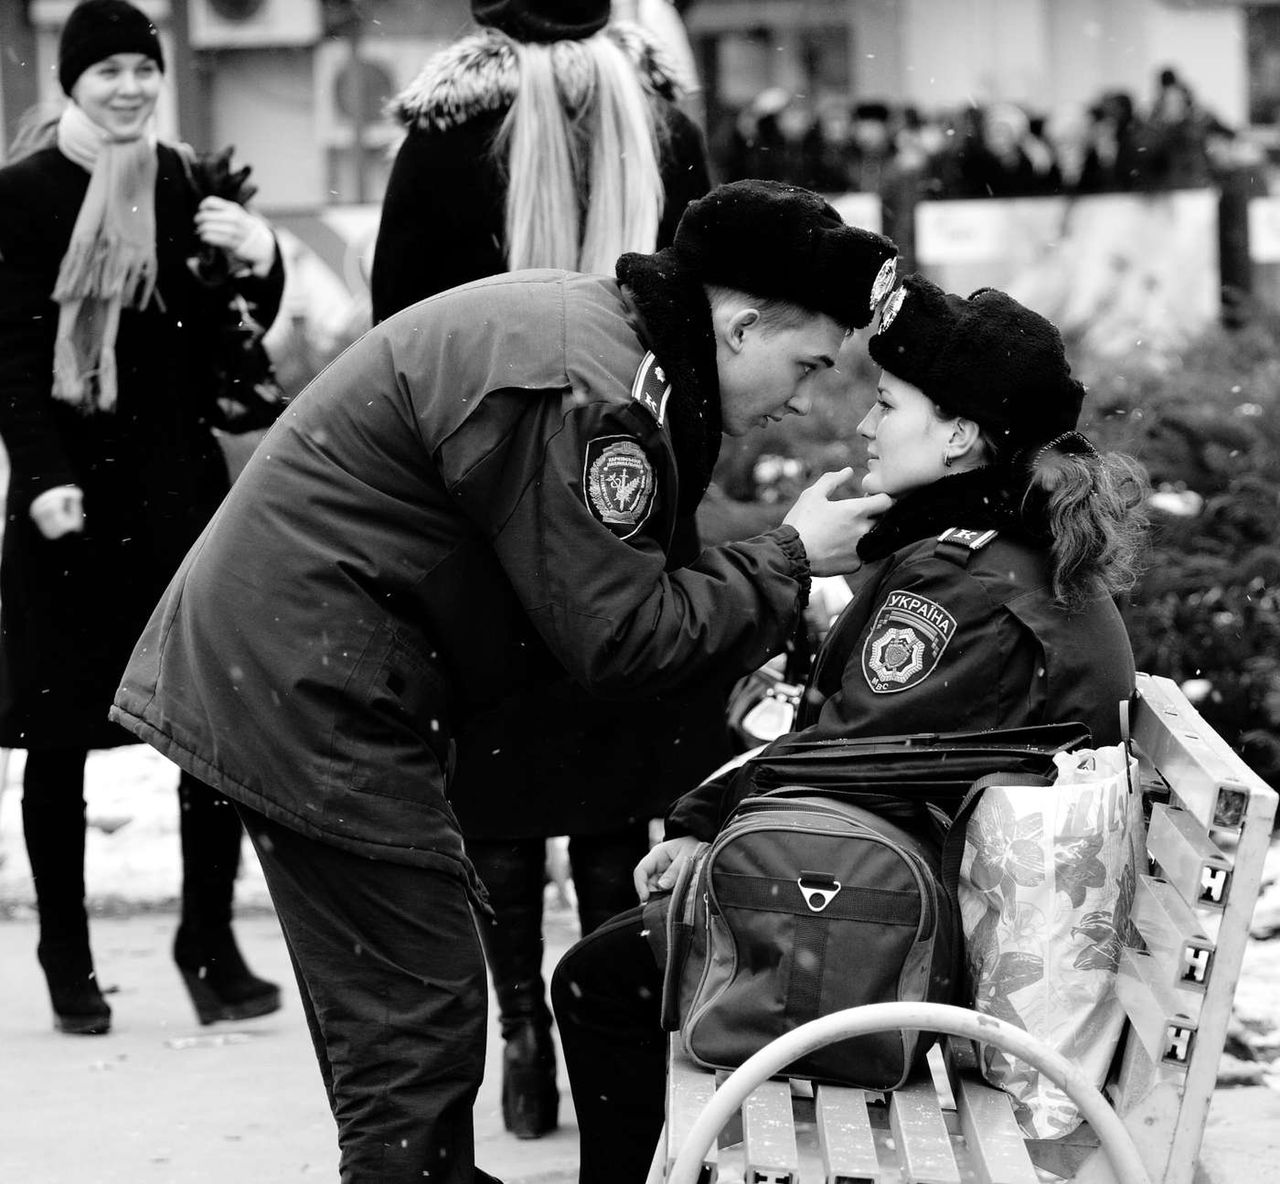 Zdjęcie Armena Dolukhanyan „Para policjantów" zwyciężyło w kategorii Europa, Środkowy Wschód i Afryka.